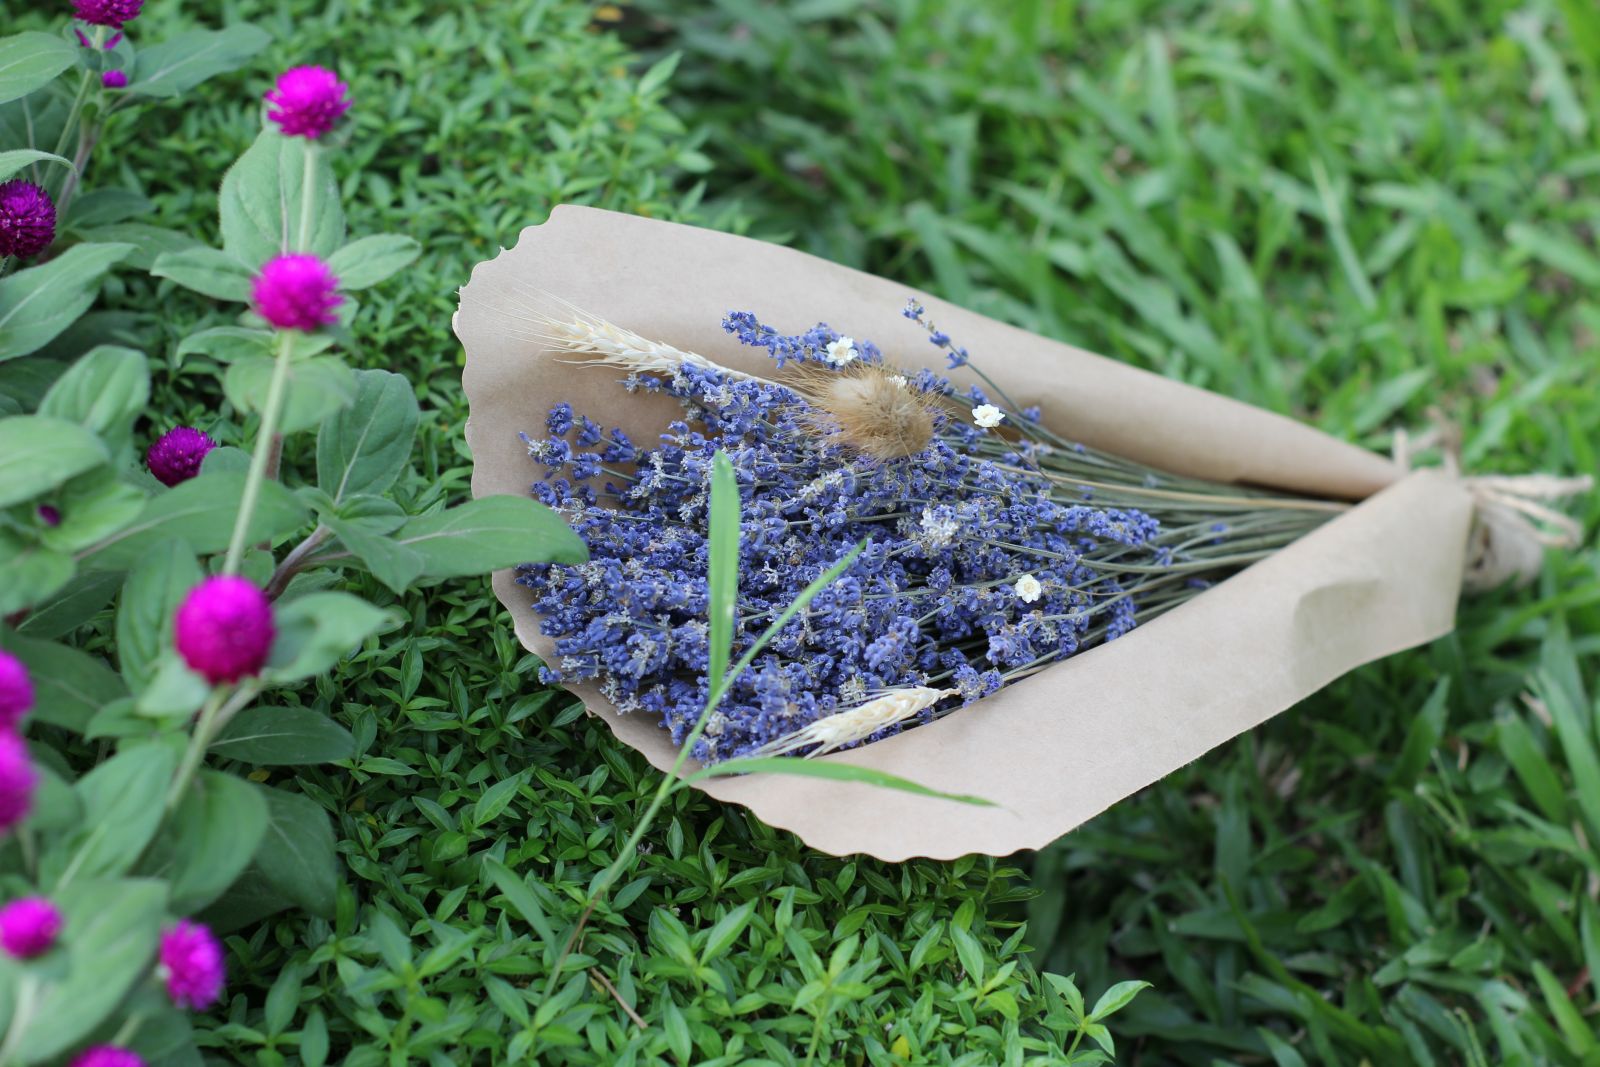 Bán sỉ hoa Lavender Đà Nẵng, sao bạn chưa thử?